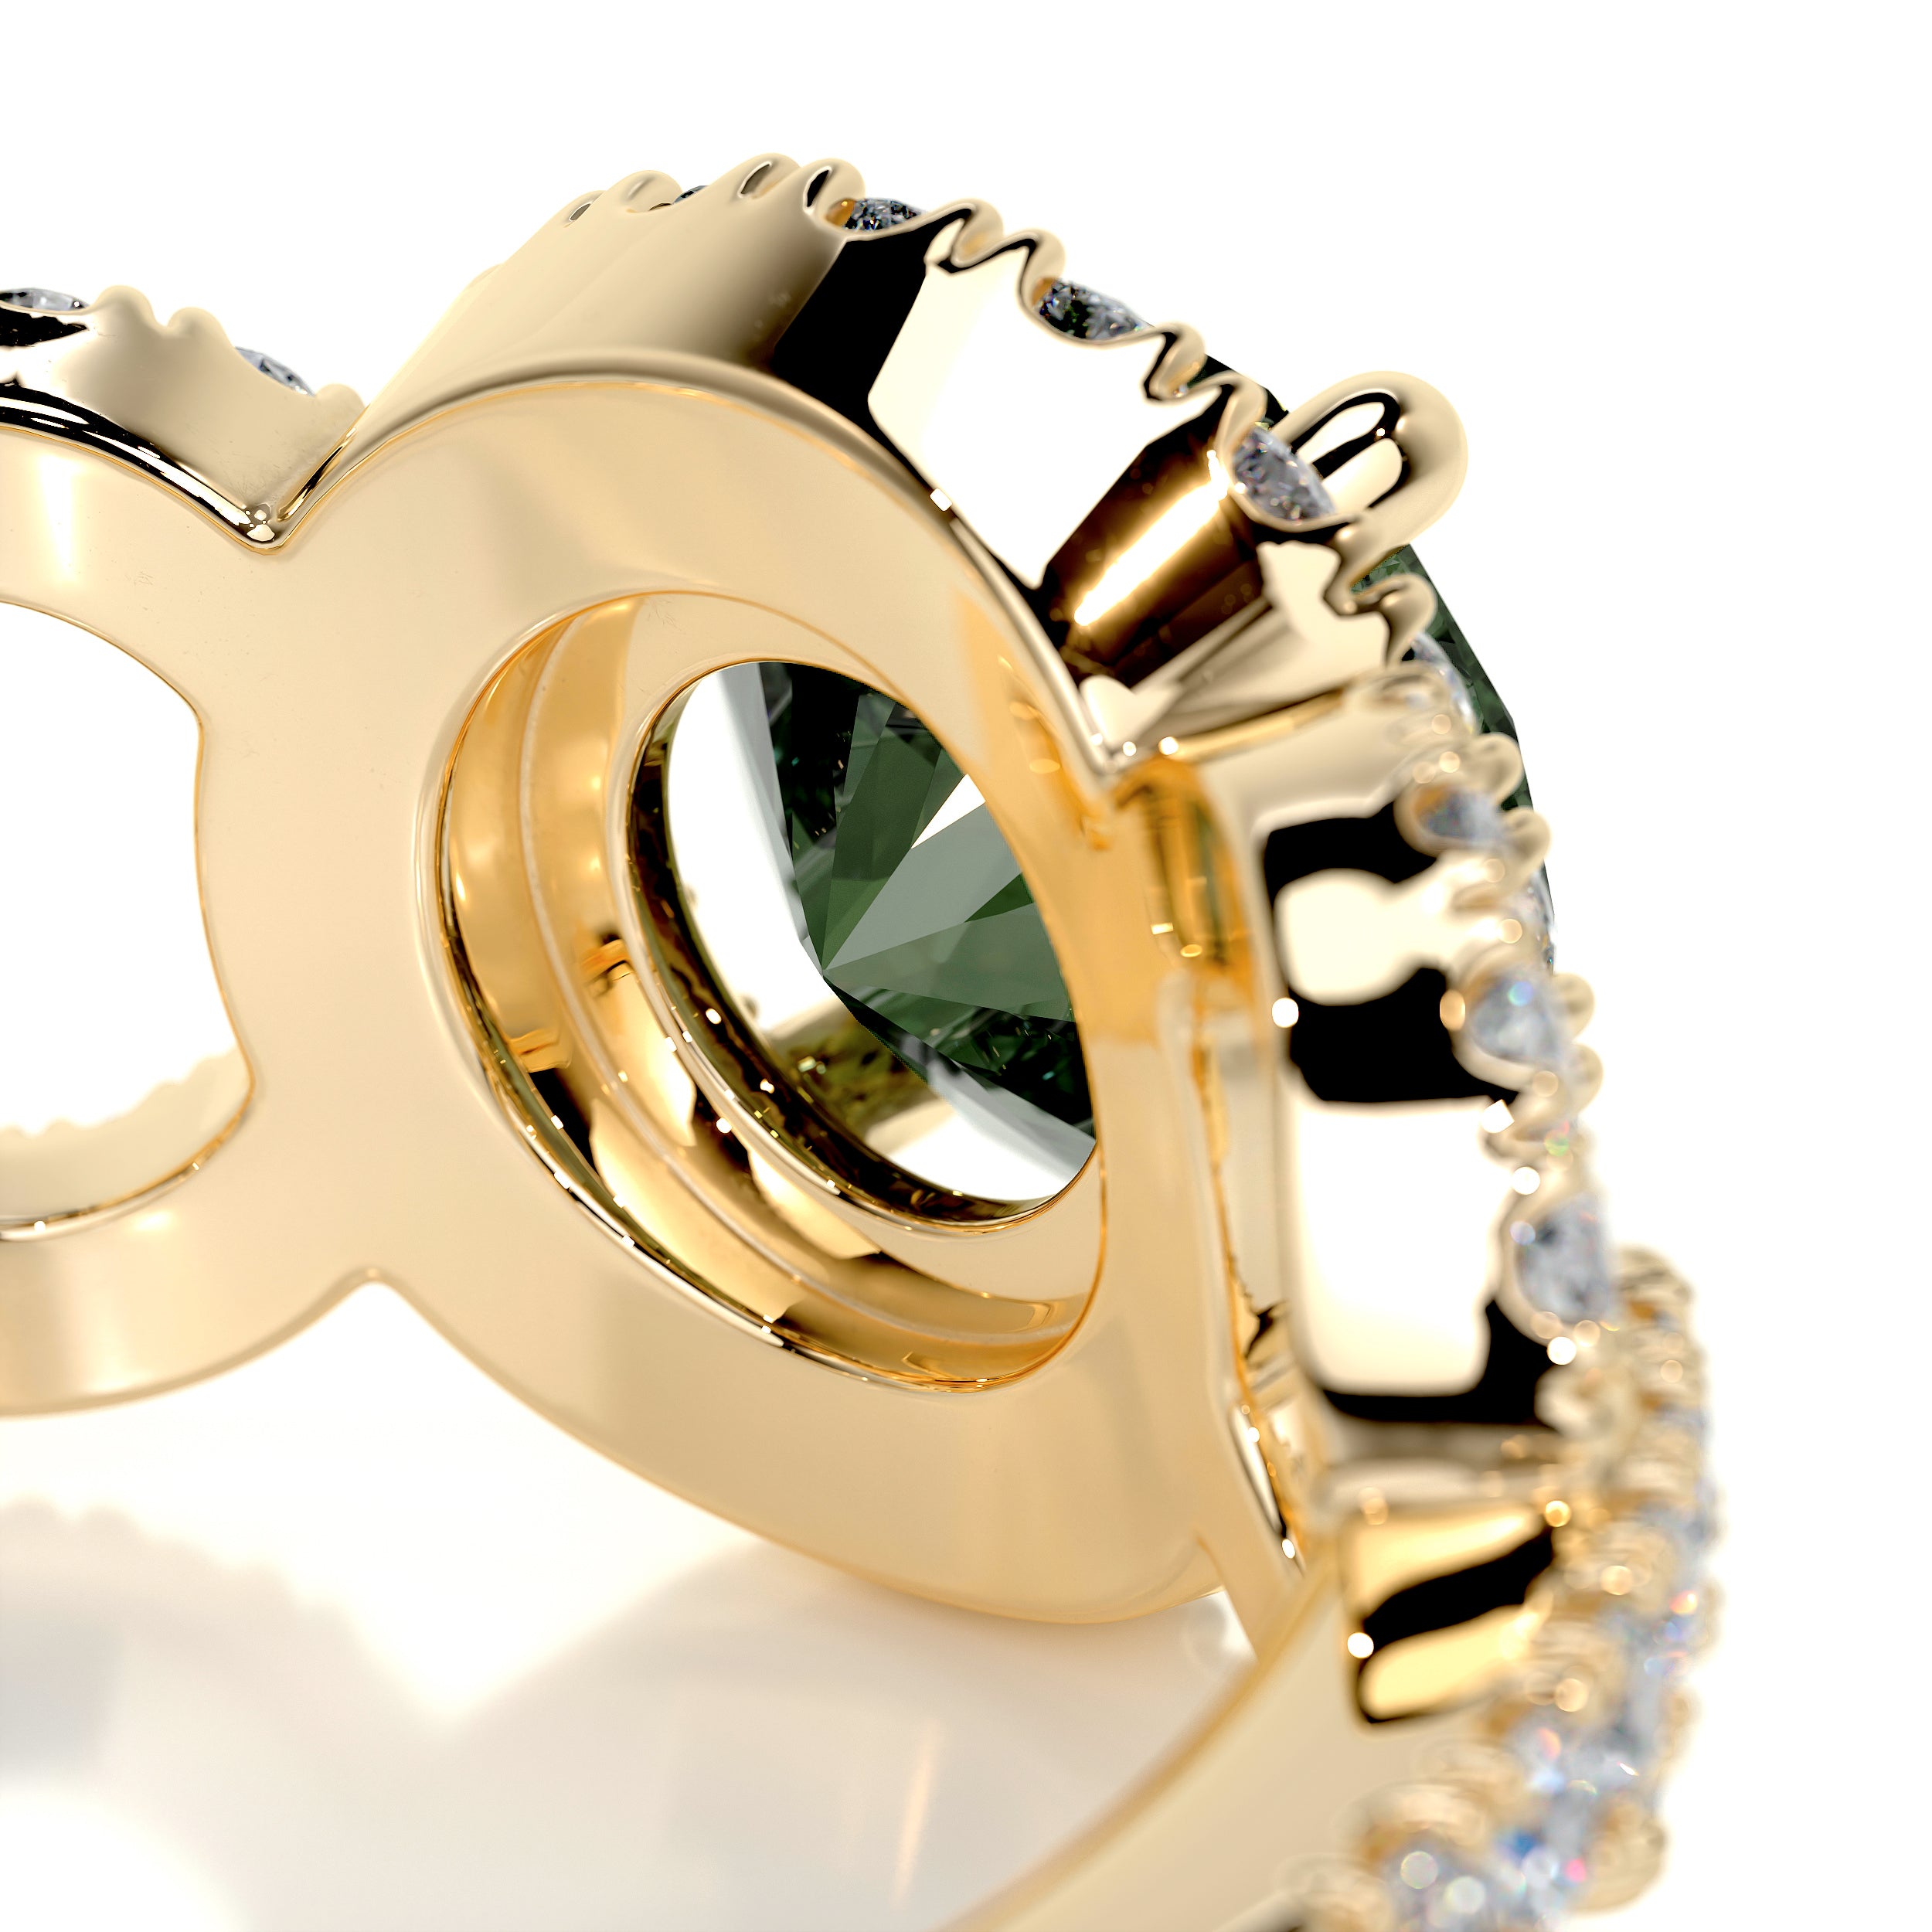 Elize Gemstone & Diamonds Ring   (1.25 Carat) -18K Yellow Gold